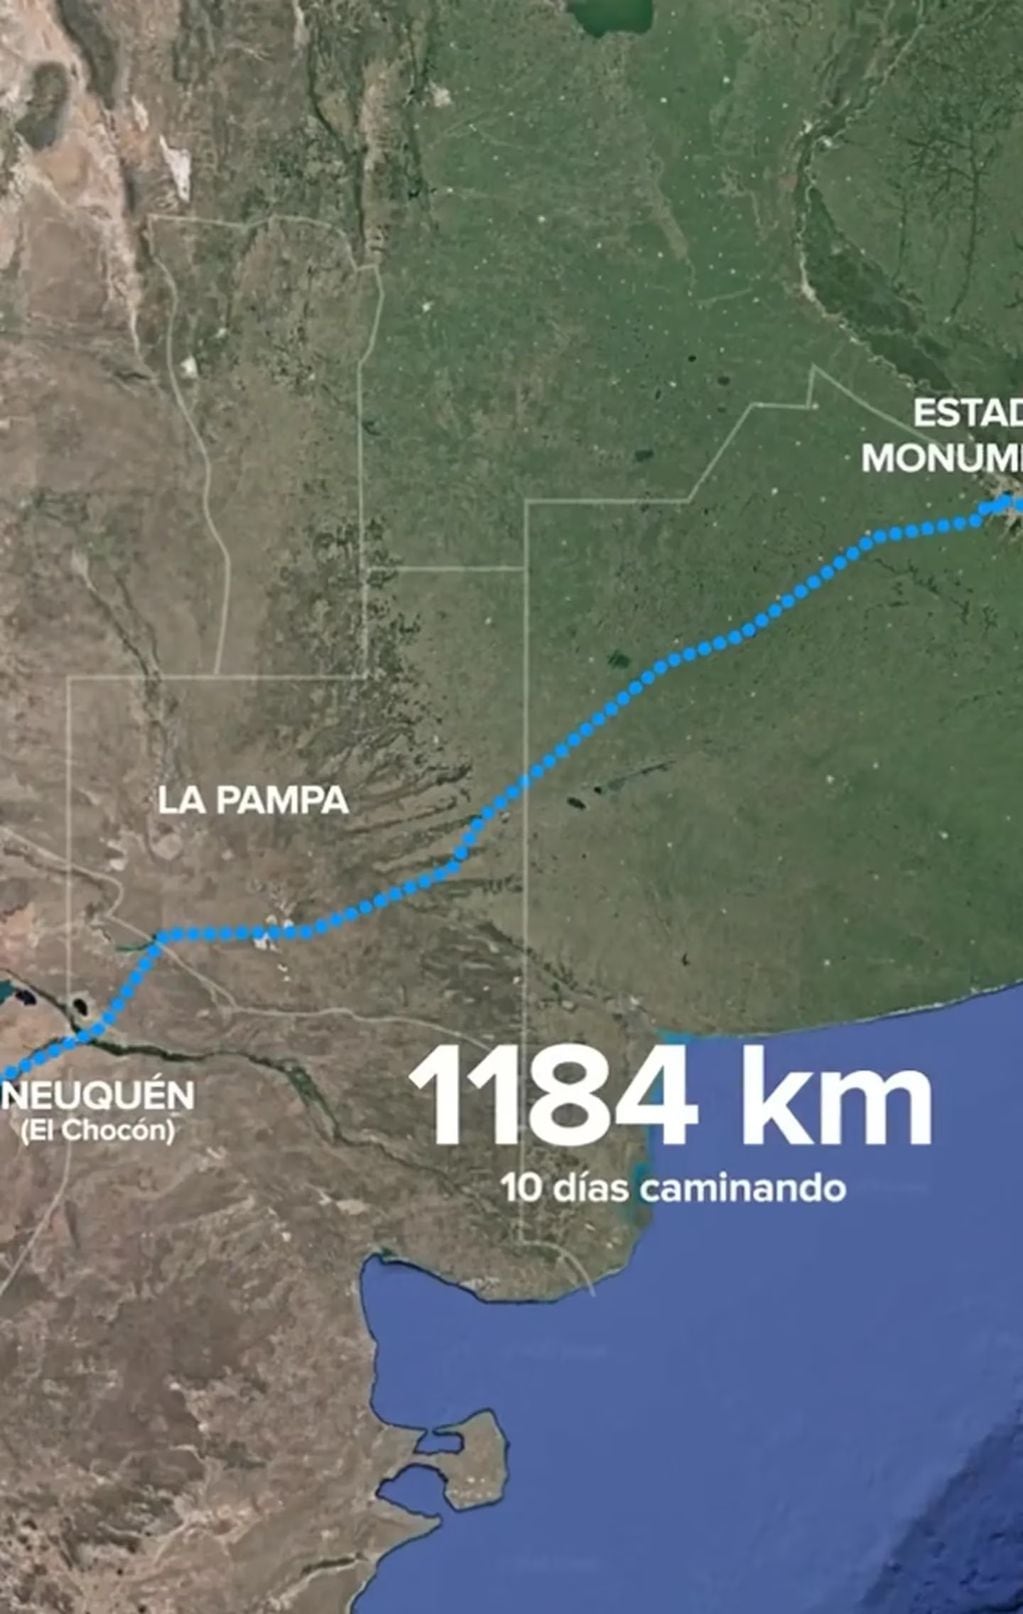 Según sus cuentas, la fila tendría una longitud de 1.184 km. Gentileza: TN.